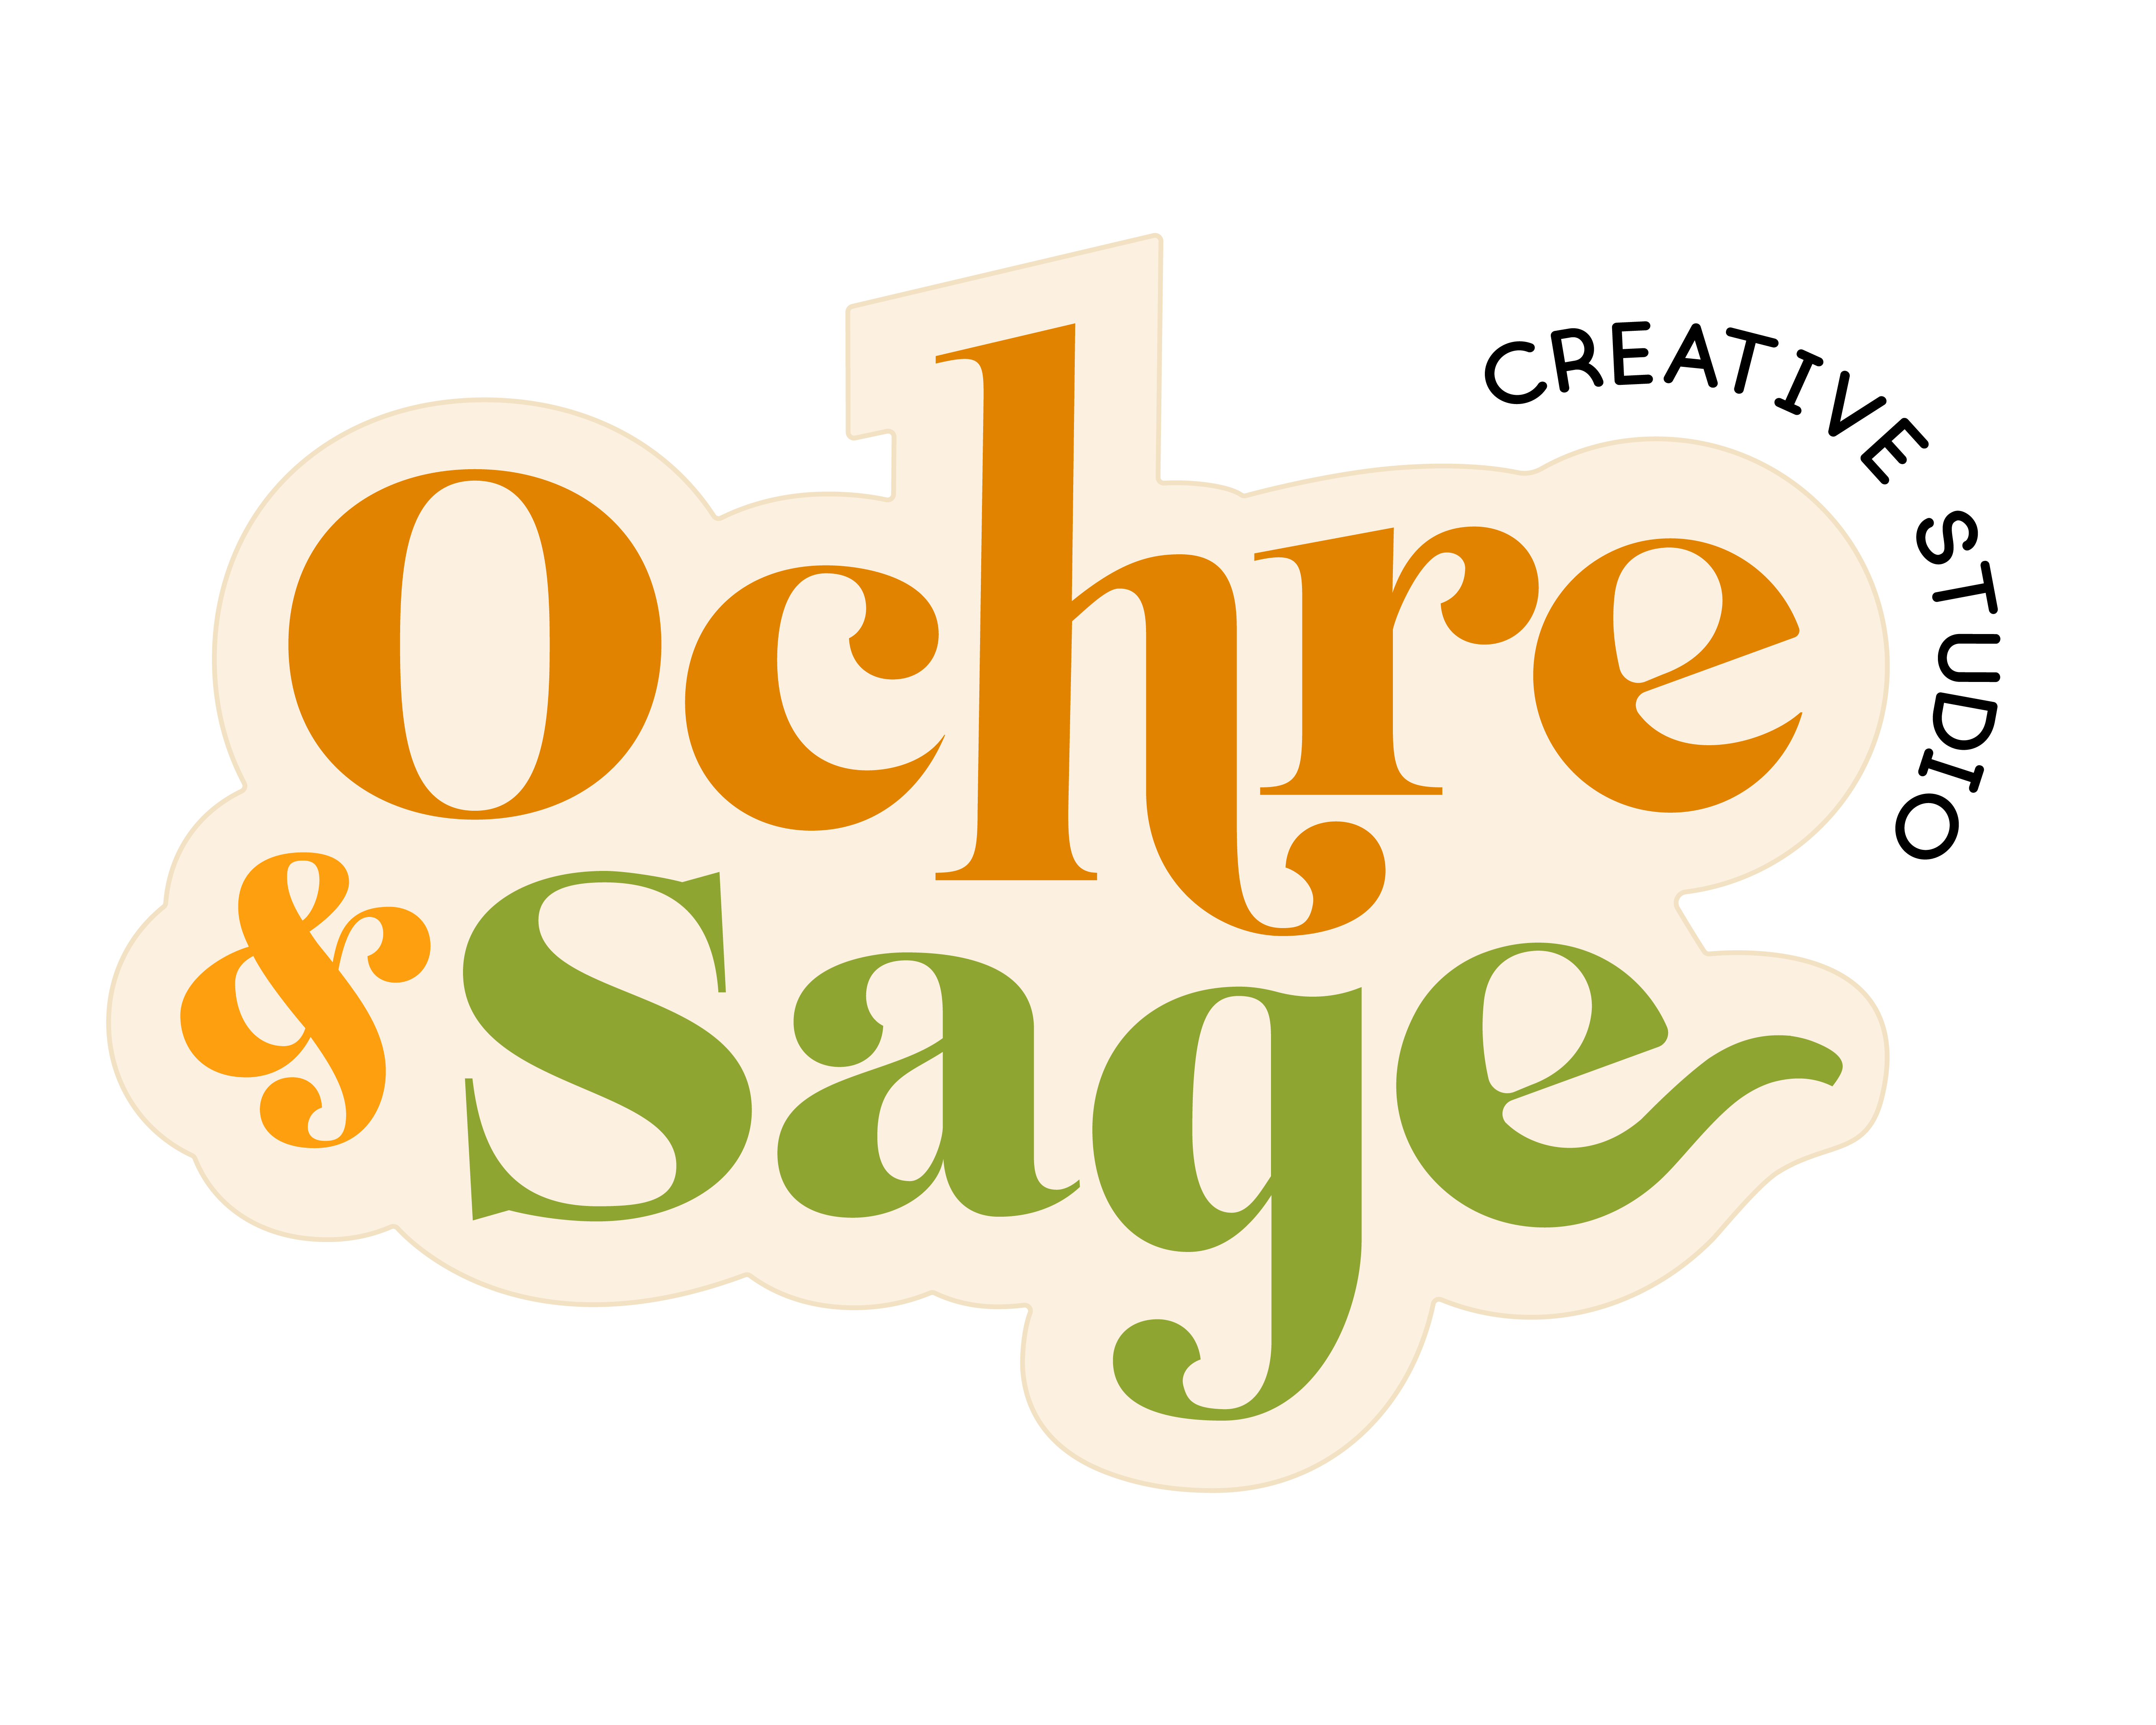 Ochre and Sage